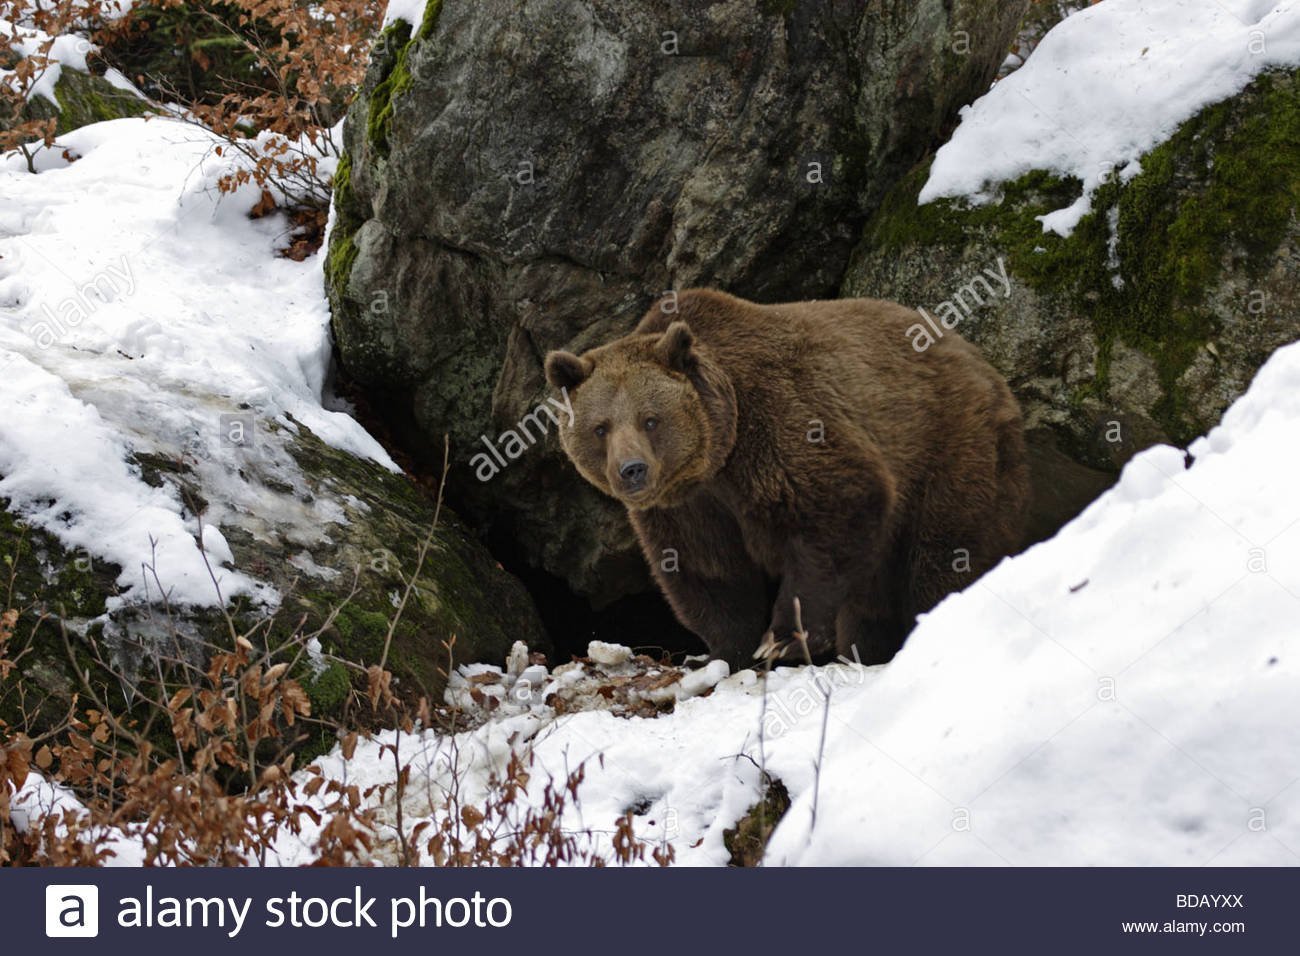 Зимняя спячка является явлением живой природы. Бурый медведь в берлоге. Бурый медведь в спячке. Бурый медведь после спячки. Медведь зимой.